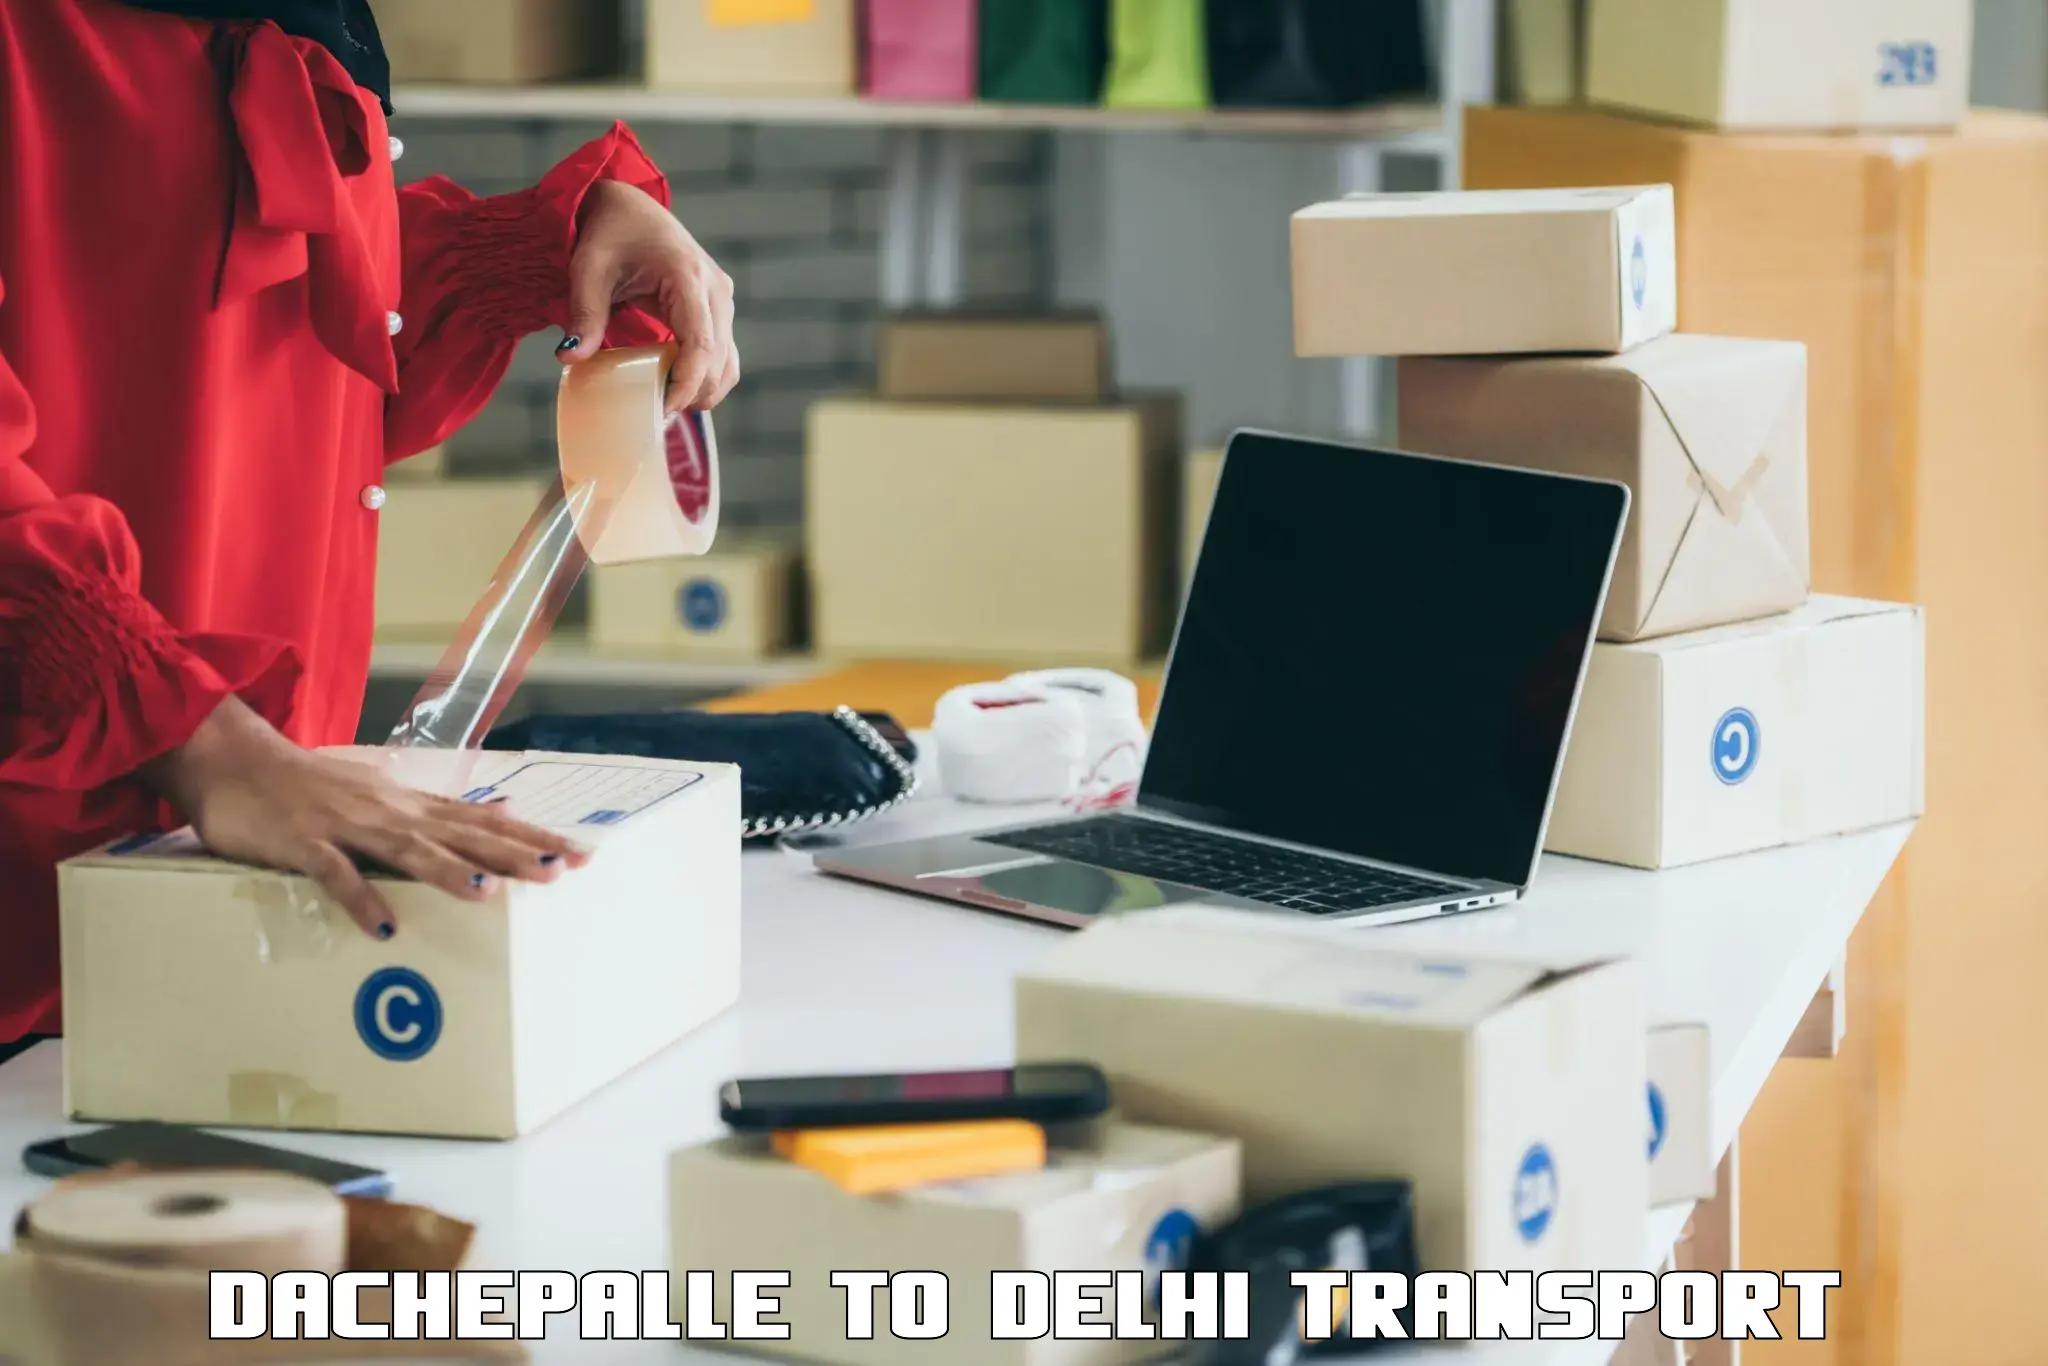 Container transportation services in Dachepalle to Jamia Millia Islamia New Delhi